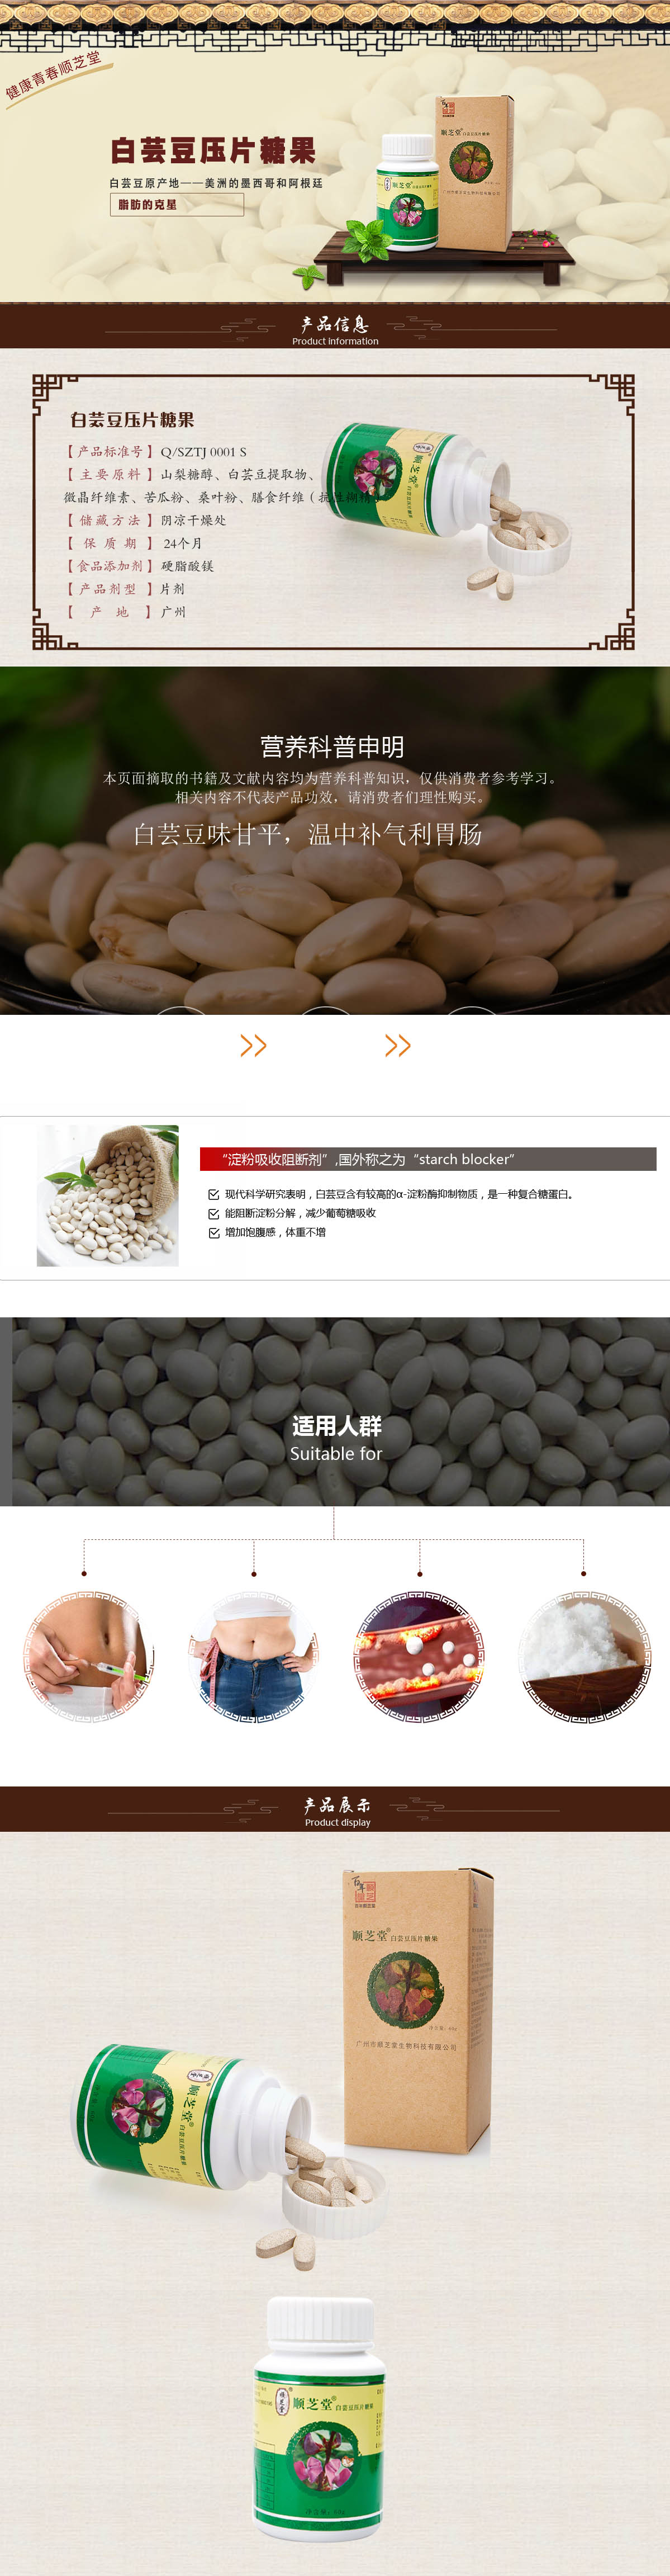 健康食品-白芸豆.jpg